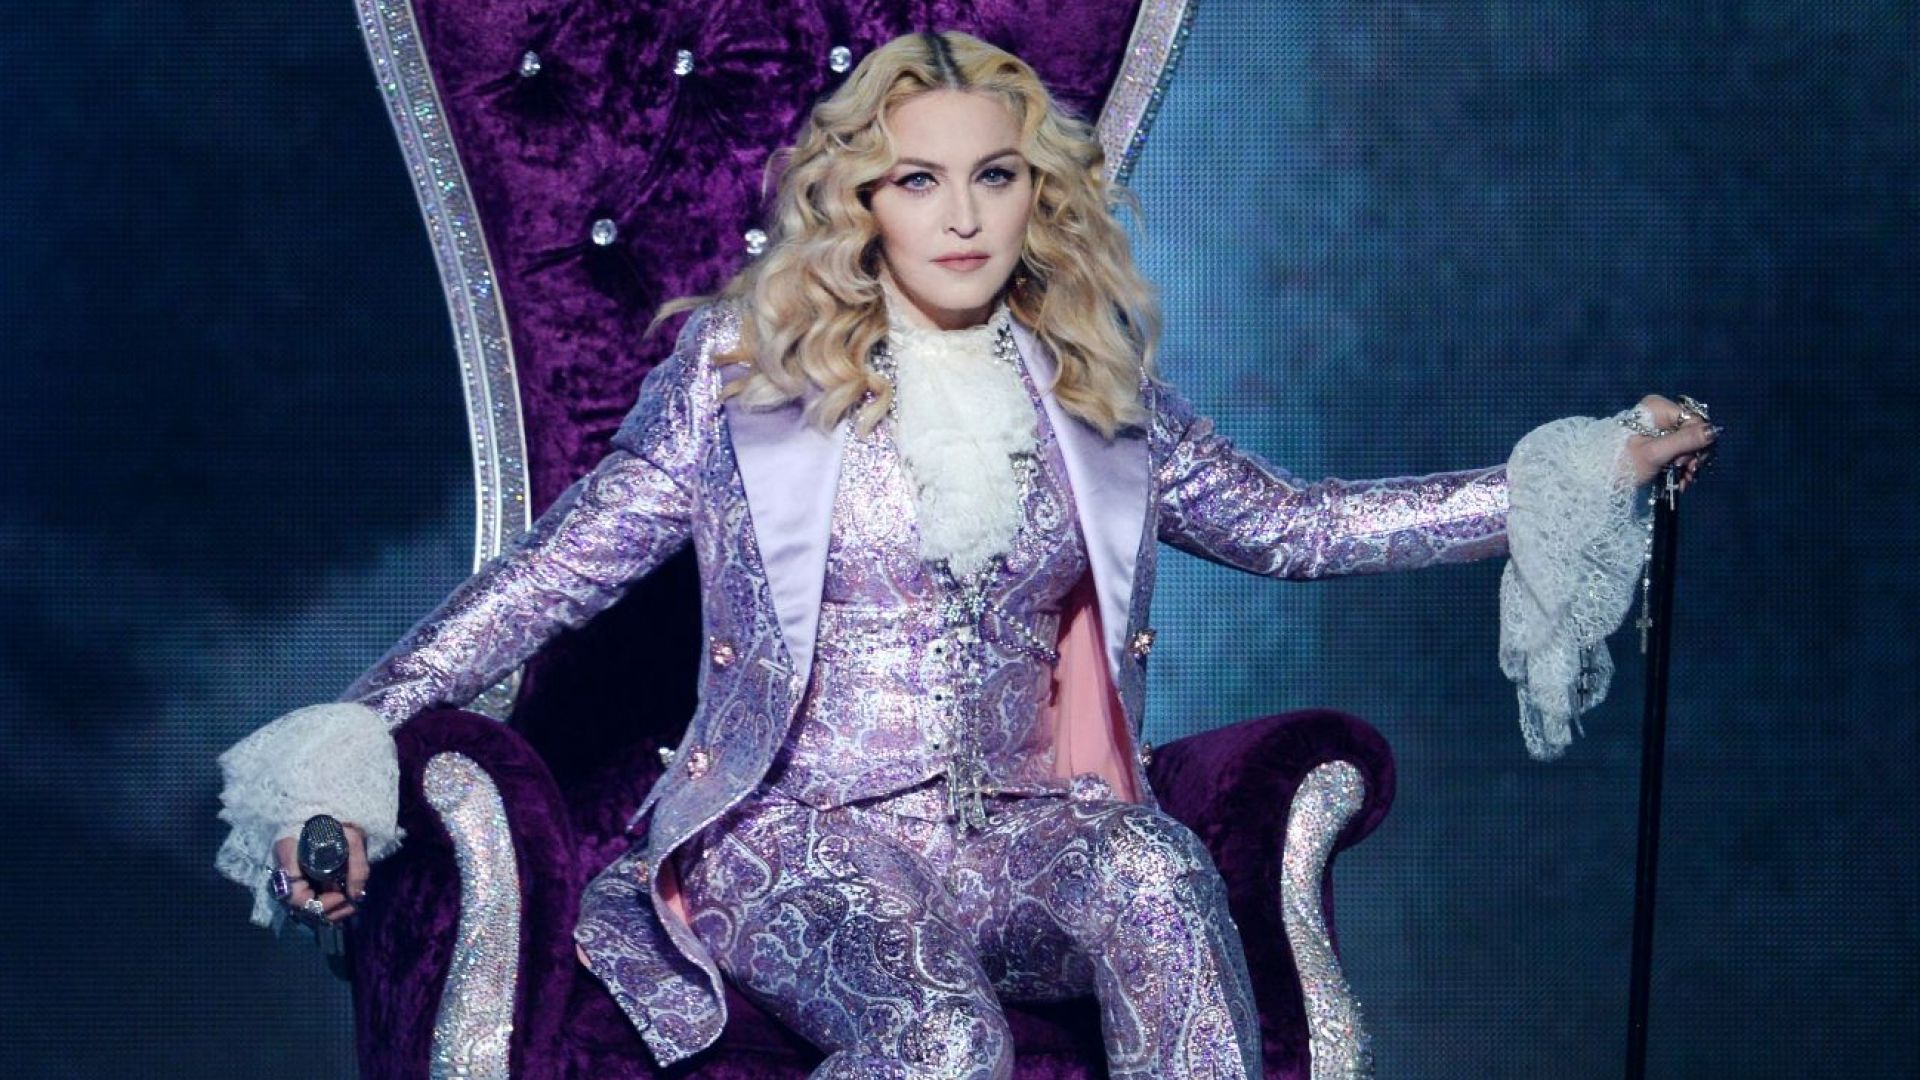 Мадона с топлес снимка - на 61 г. и с патерица, но все така провокативна